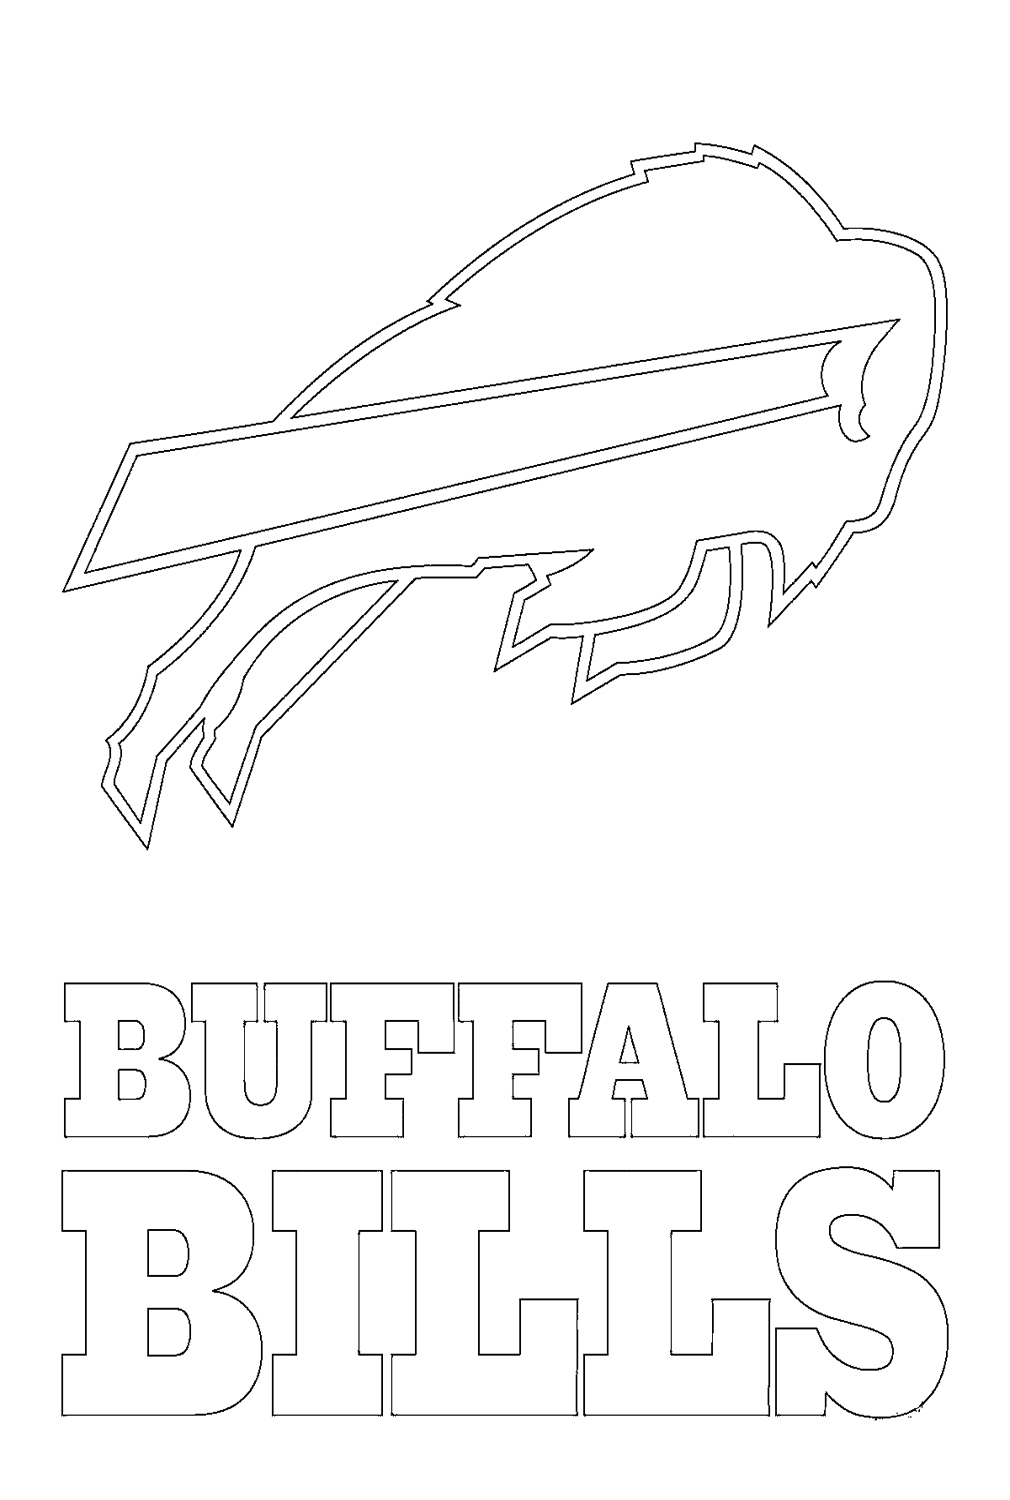 شعار بافالو بيلز من اتحاد كرة القدم الأميركي